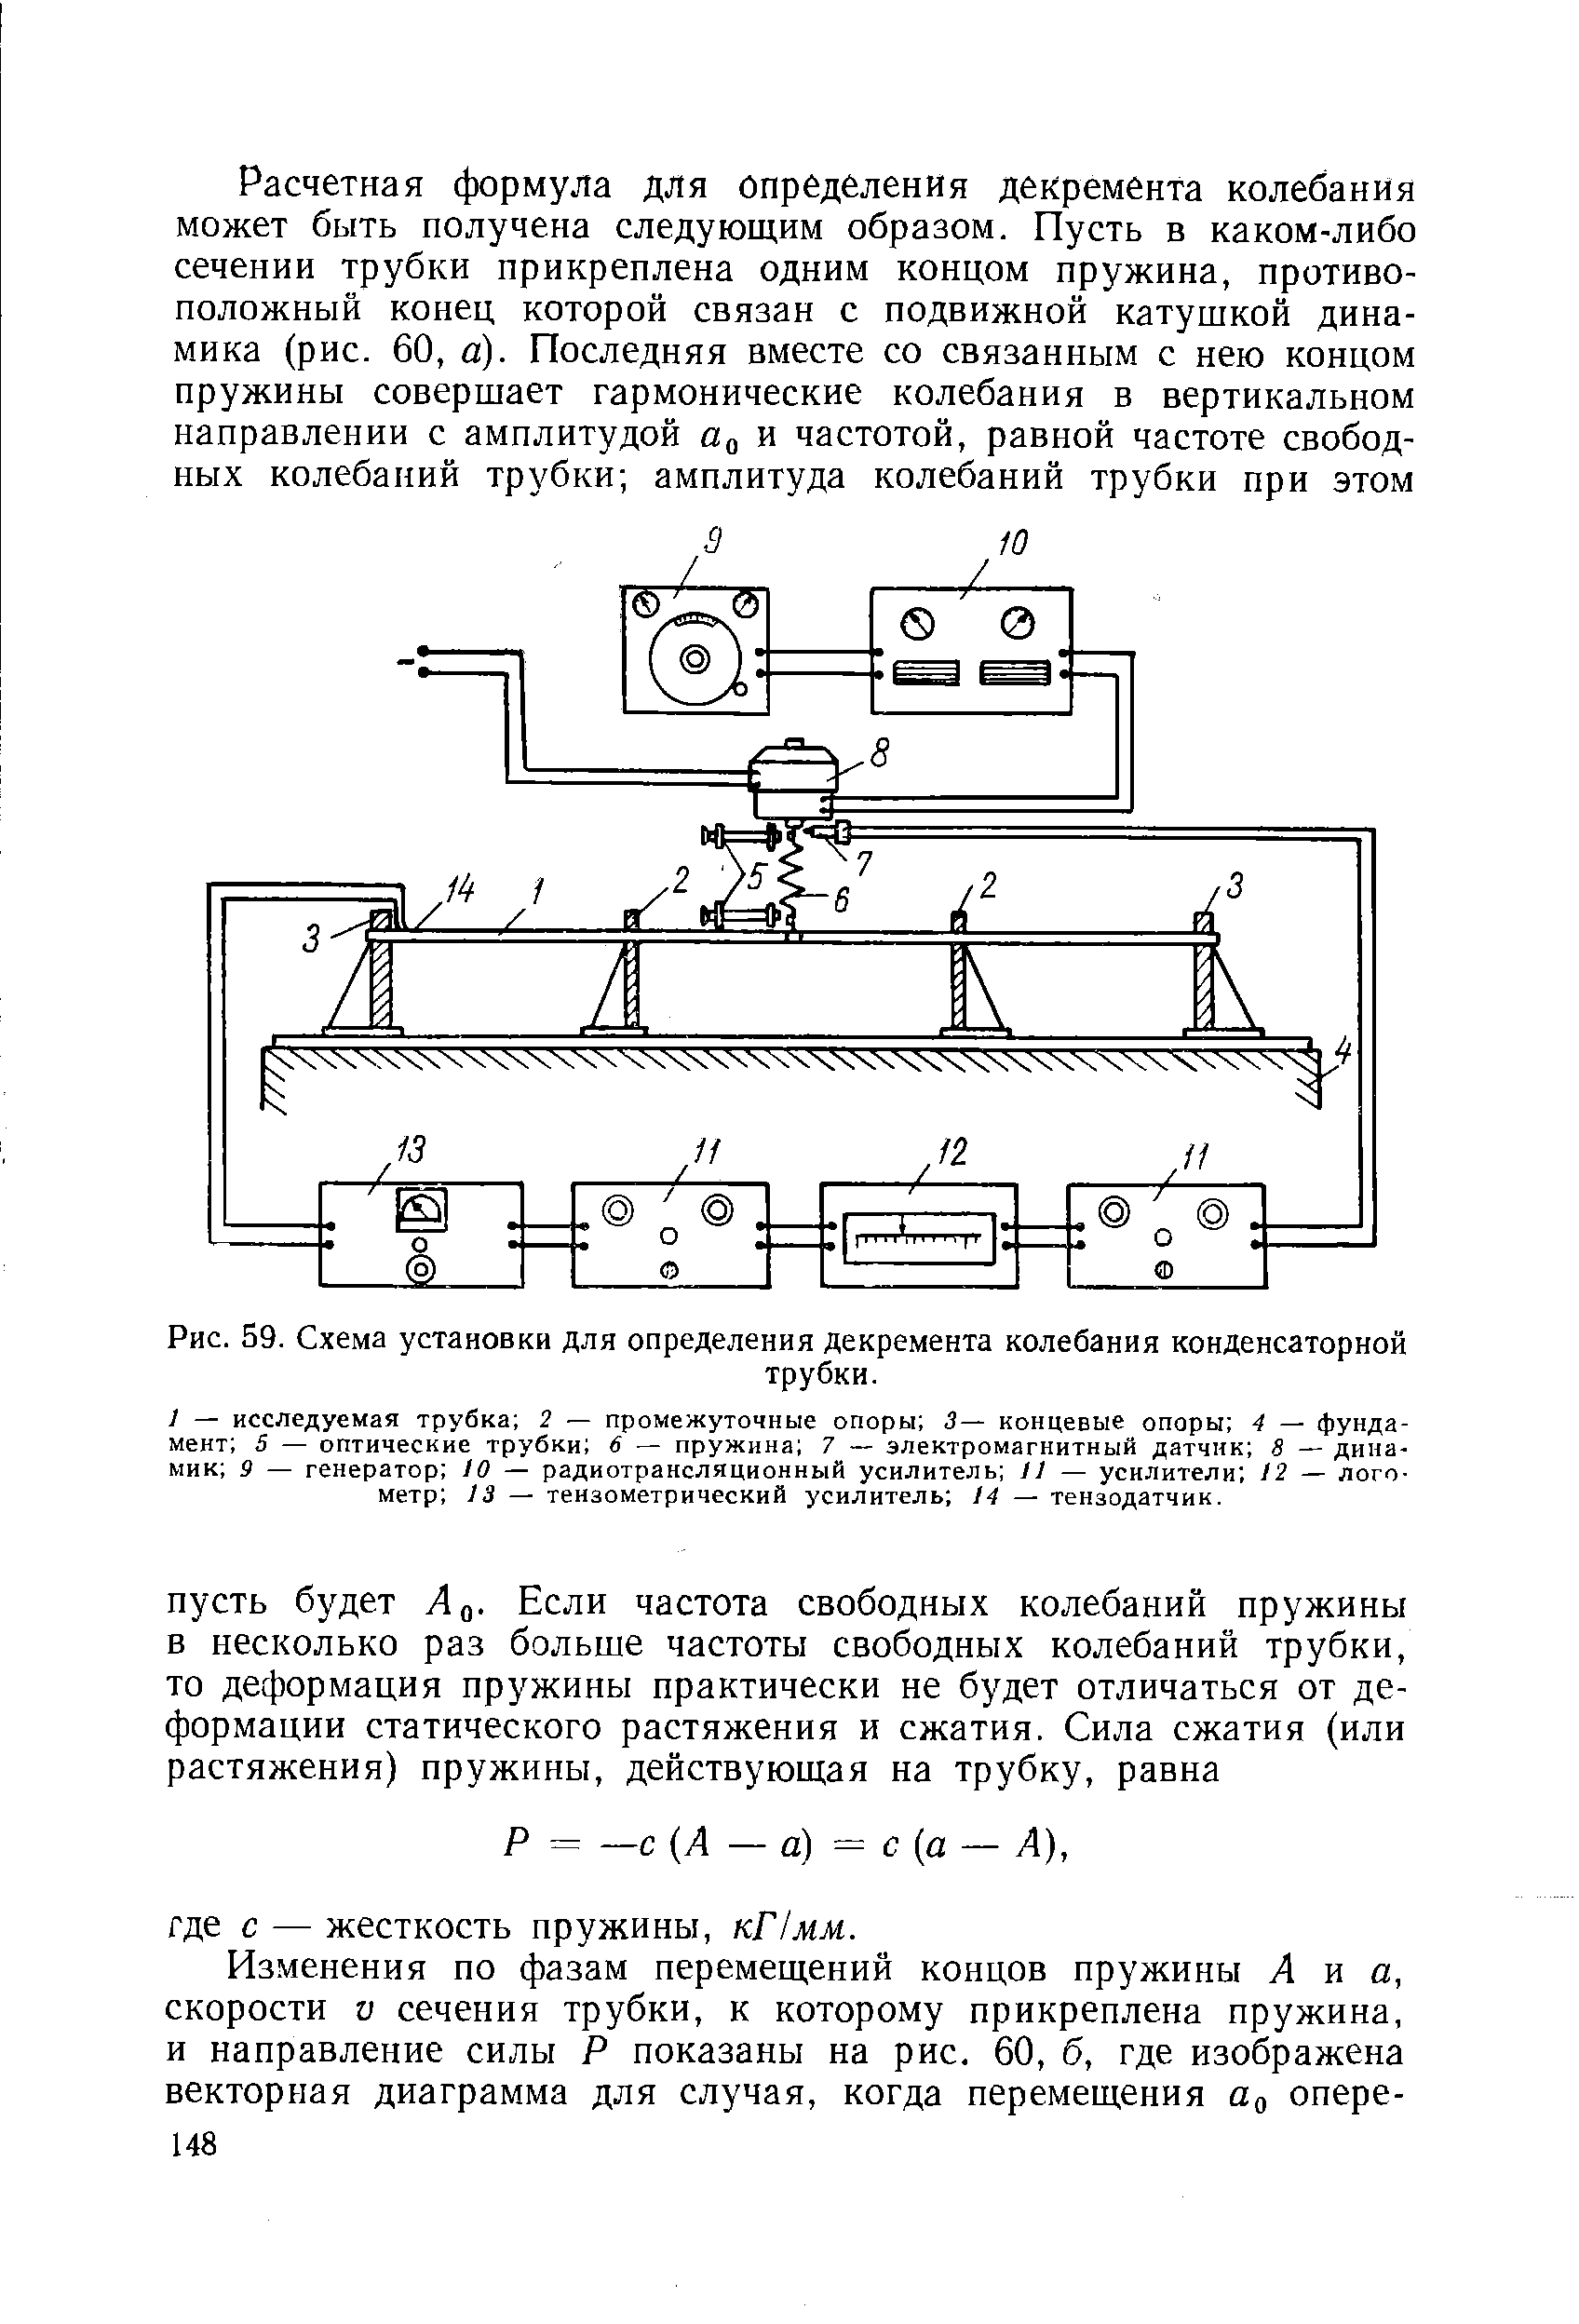 Рис. 59. Схема установки для определения декремента колебания конденсаторной
